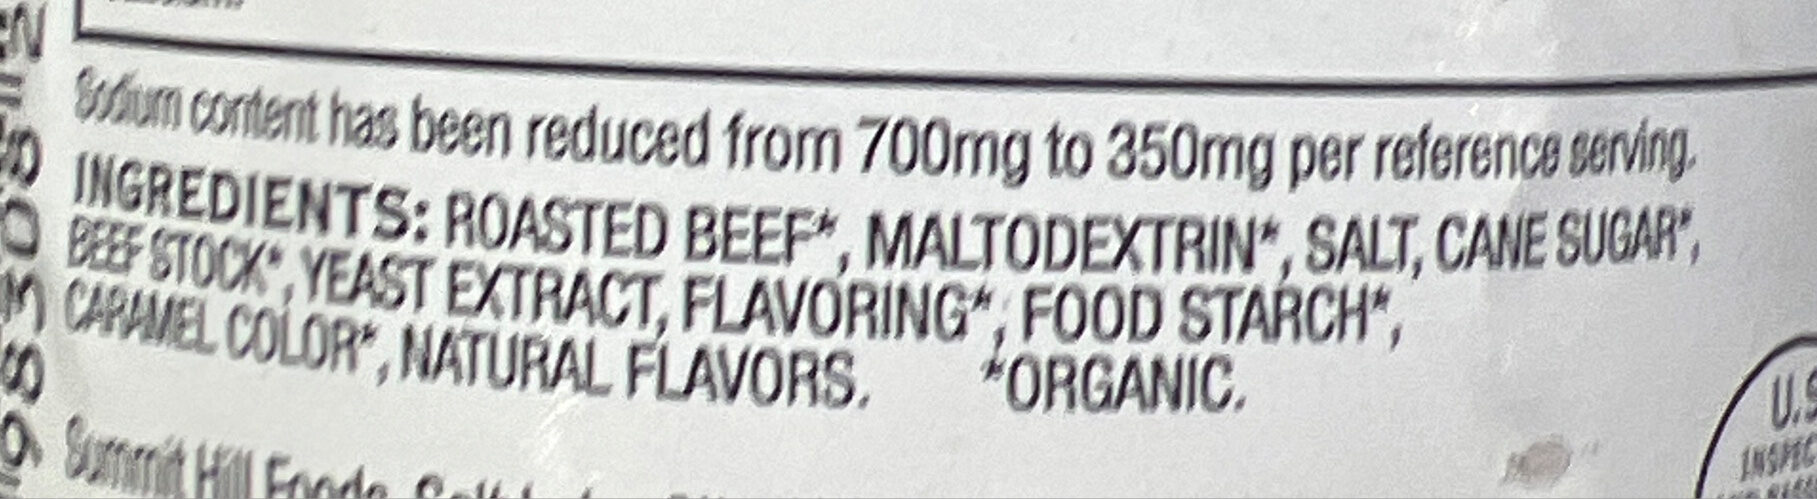 Roasted Beef base - Ingredients